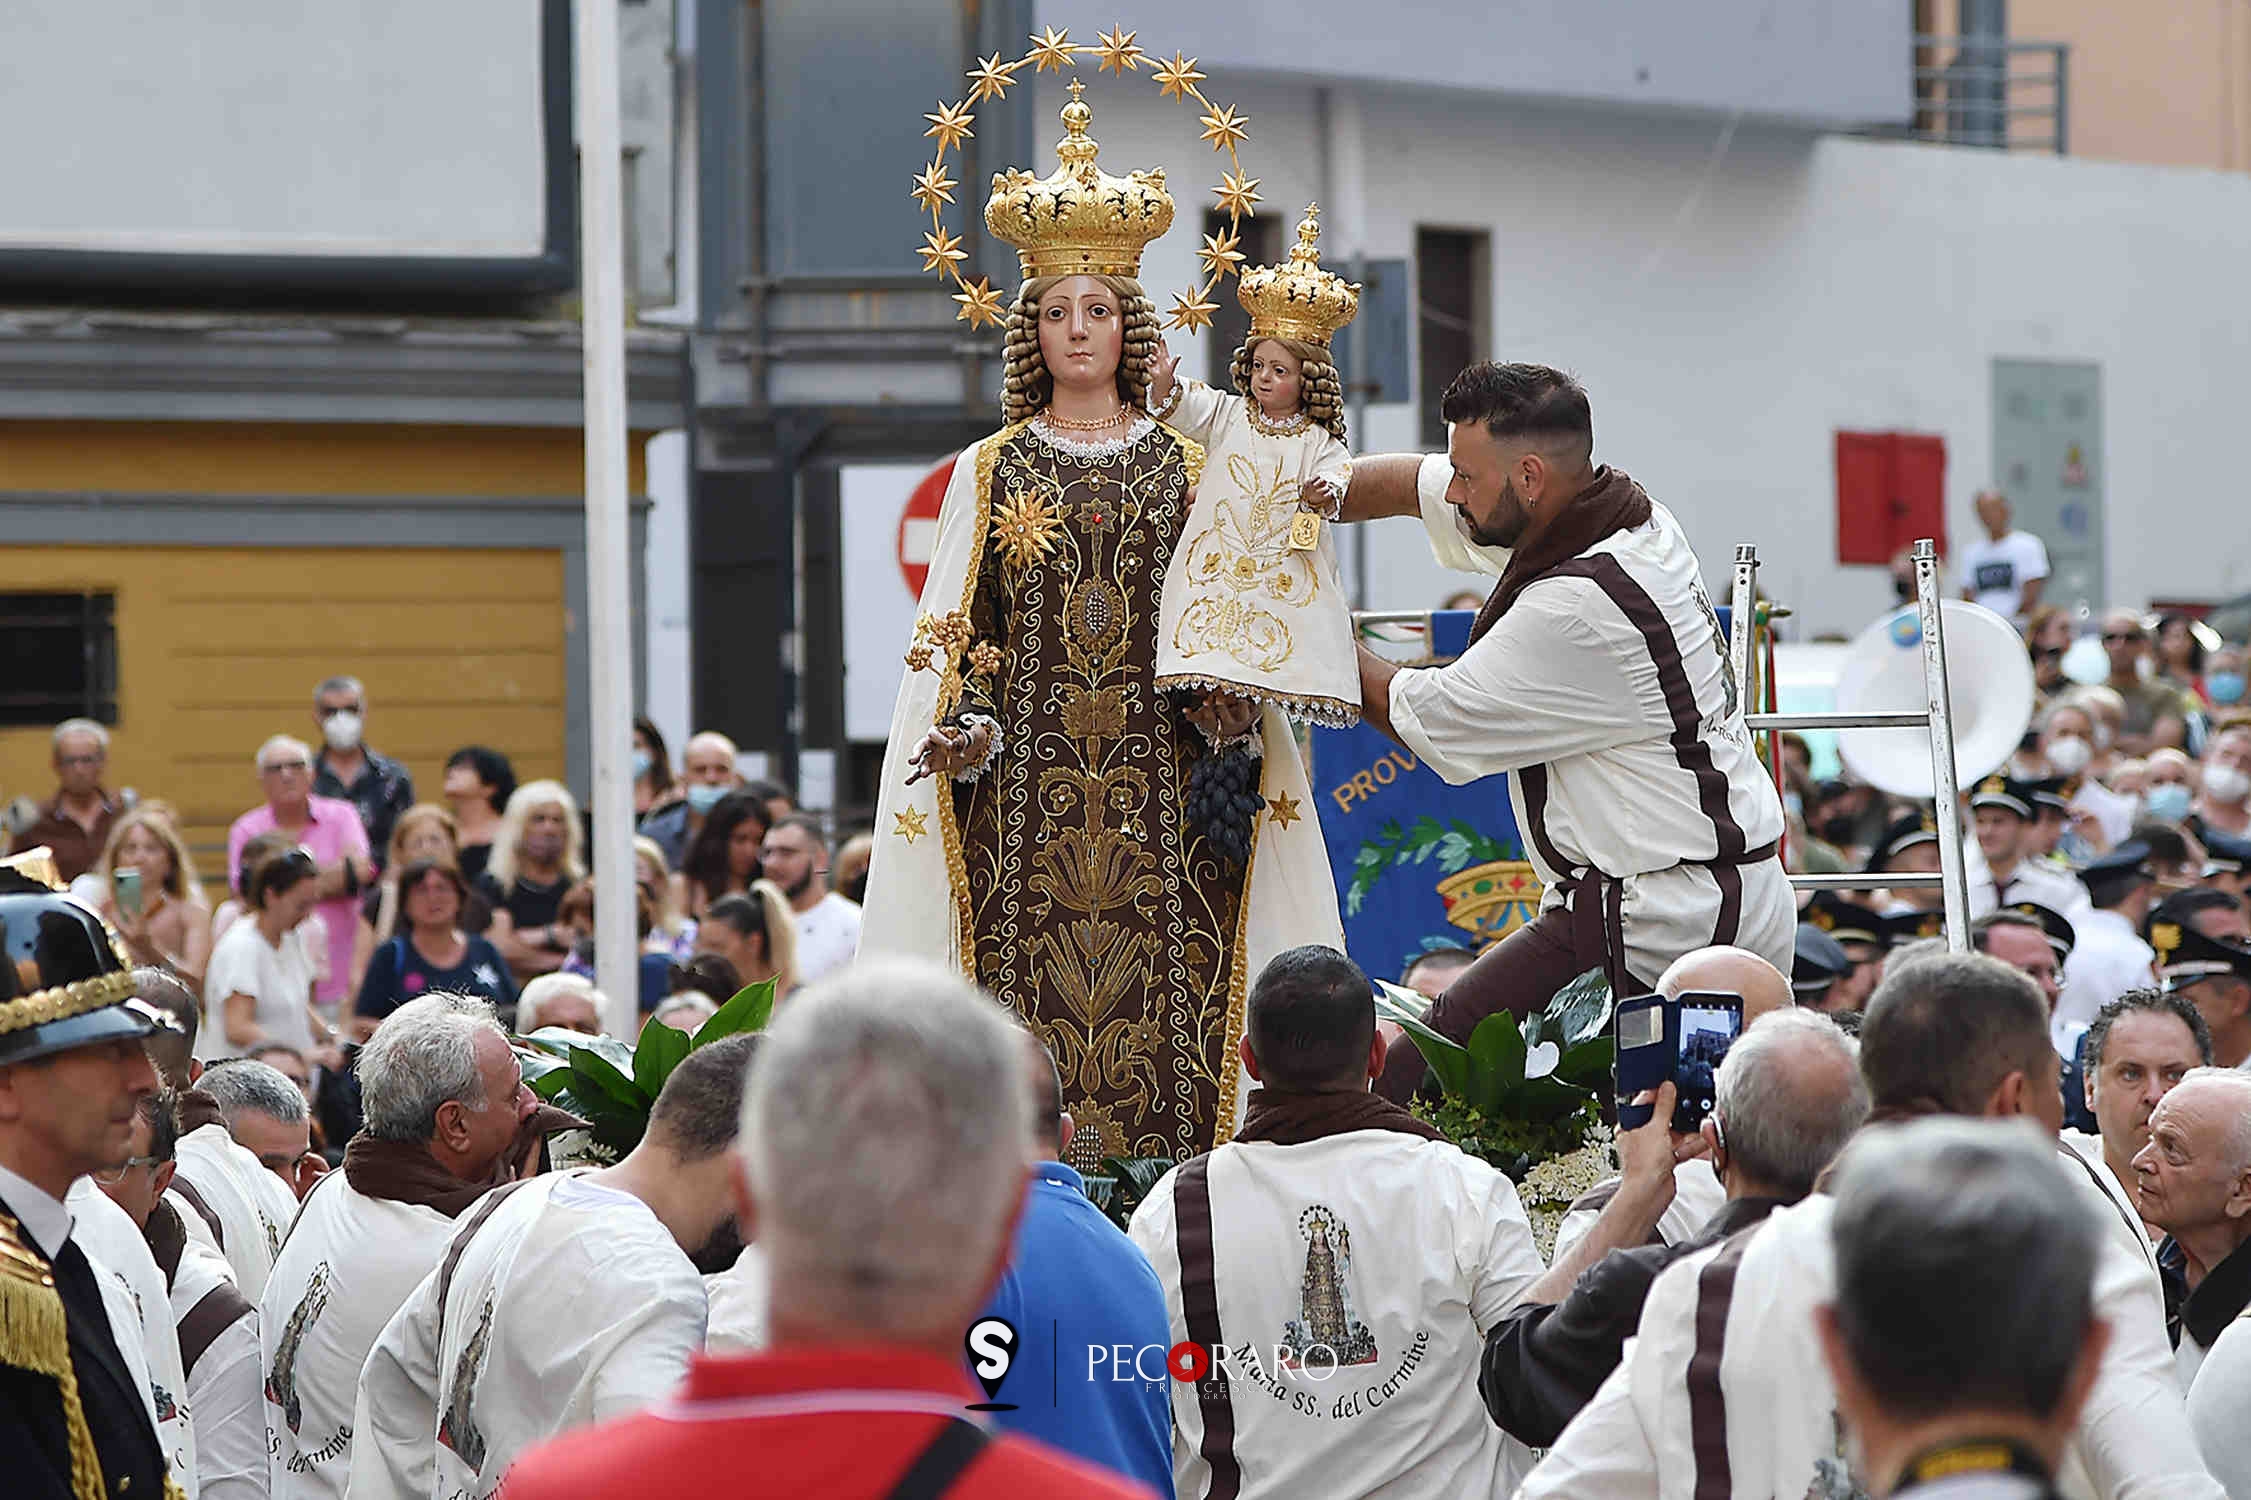 SAL - 17 07 2022 Salerno. Processione Madonna del Carmine. Foto Tanopress